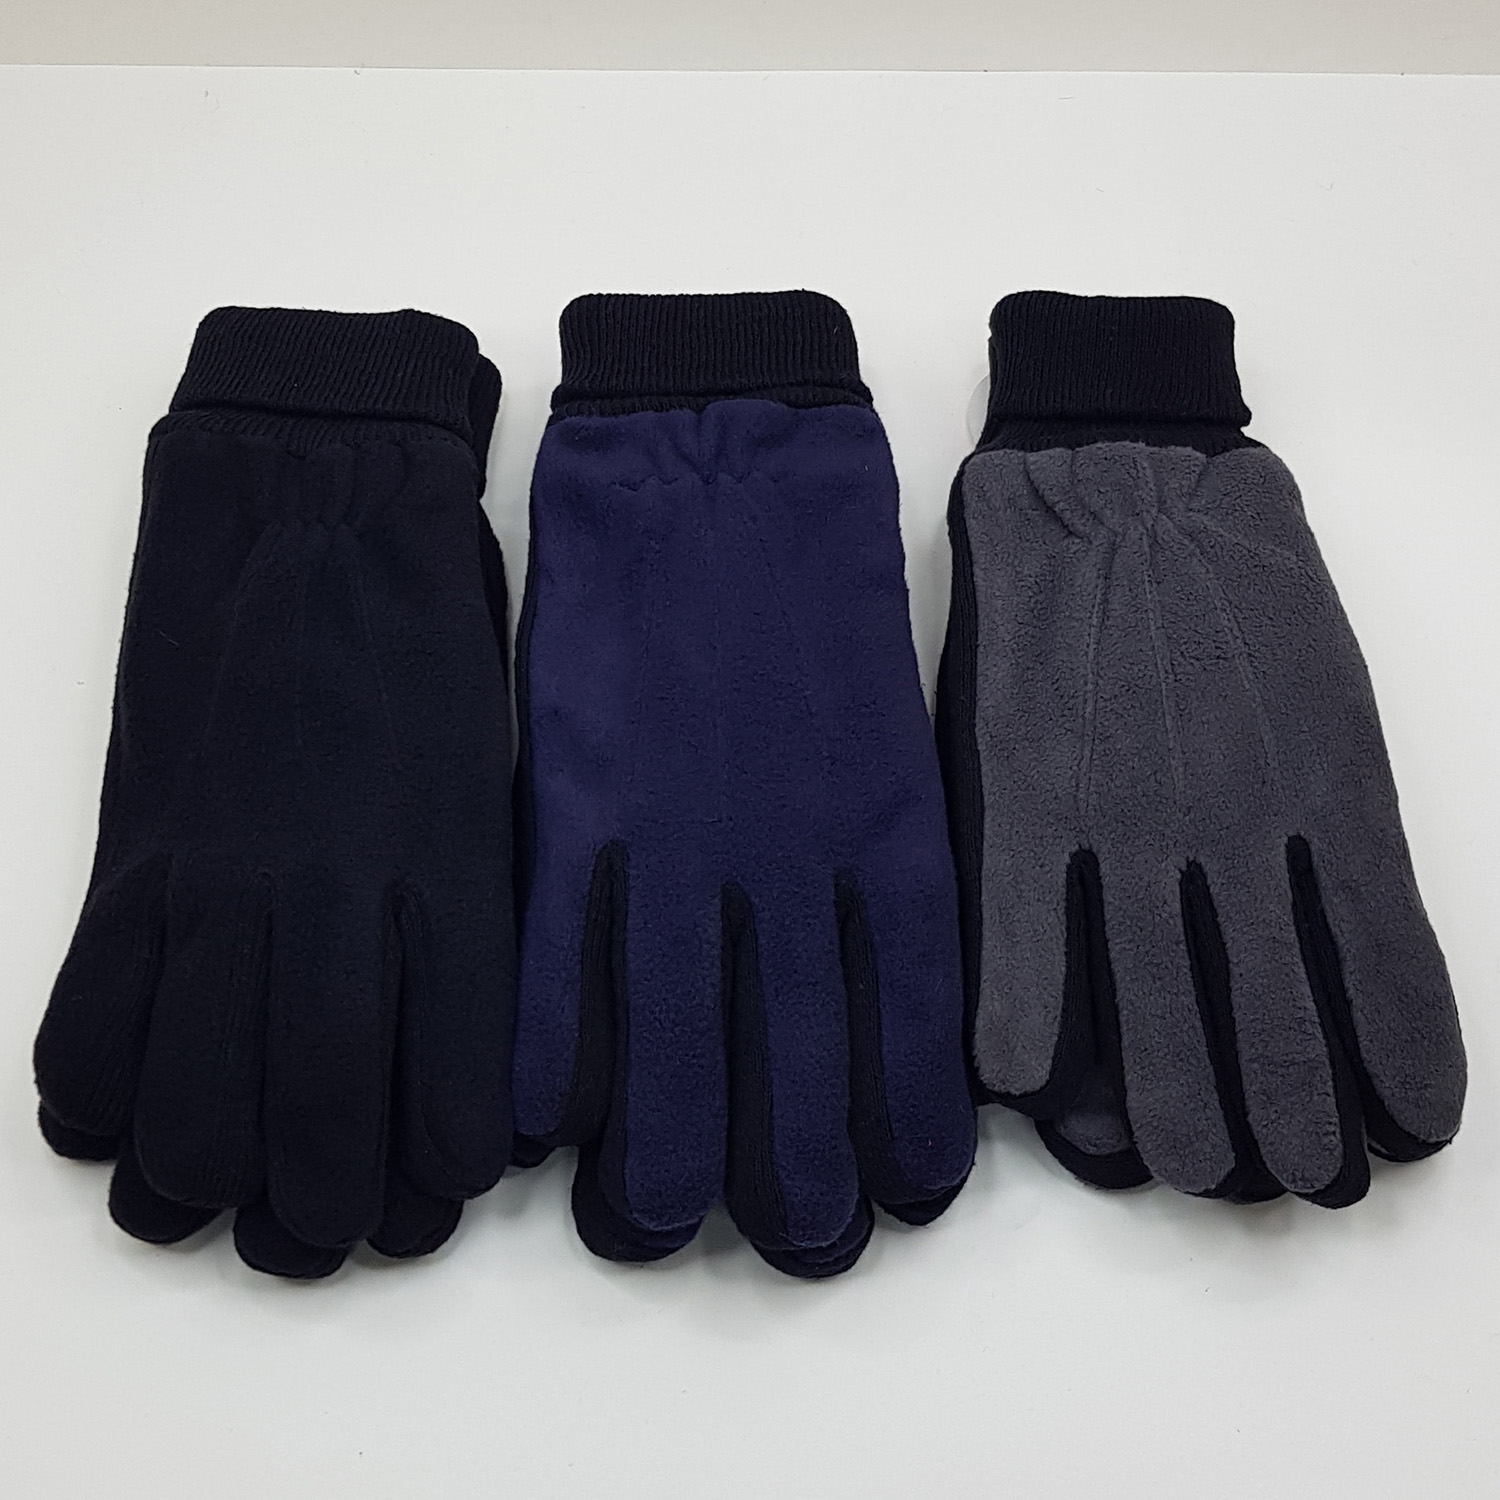 Мужские перчатки спортивные флисовые зимние №2 (Упаковка 12 шт.)